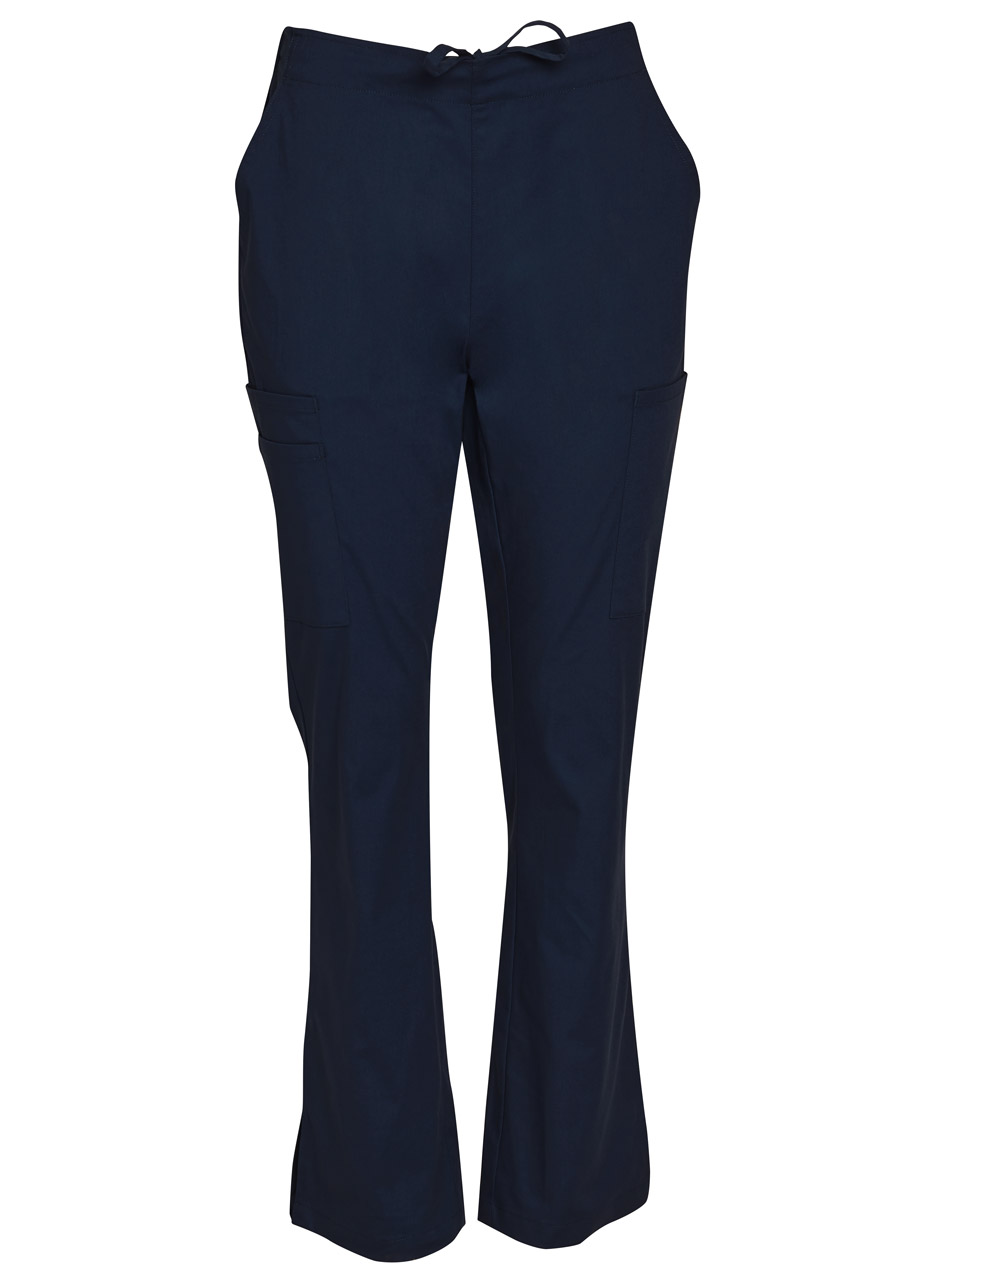 Buy Navy Ladies Semi-Elastic Waist Tie Solid Colour Scrub Pants Online in Perth